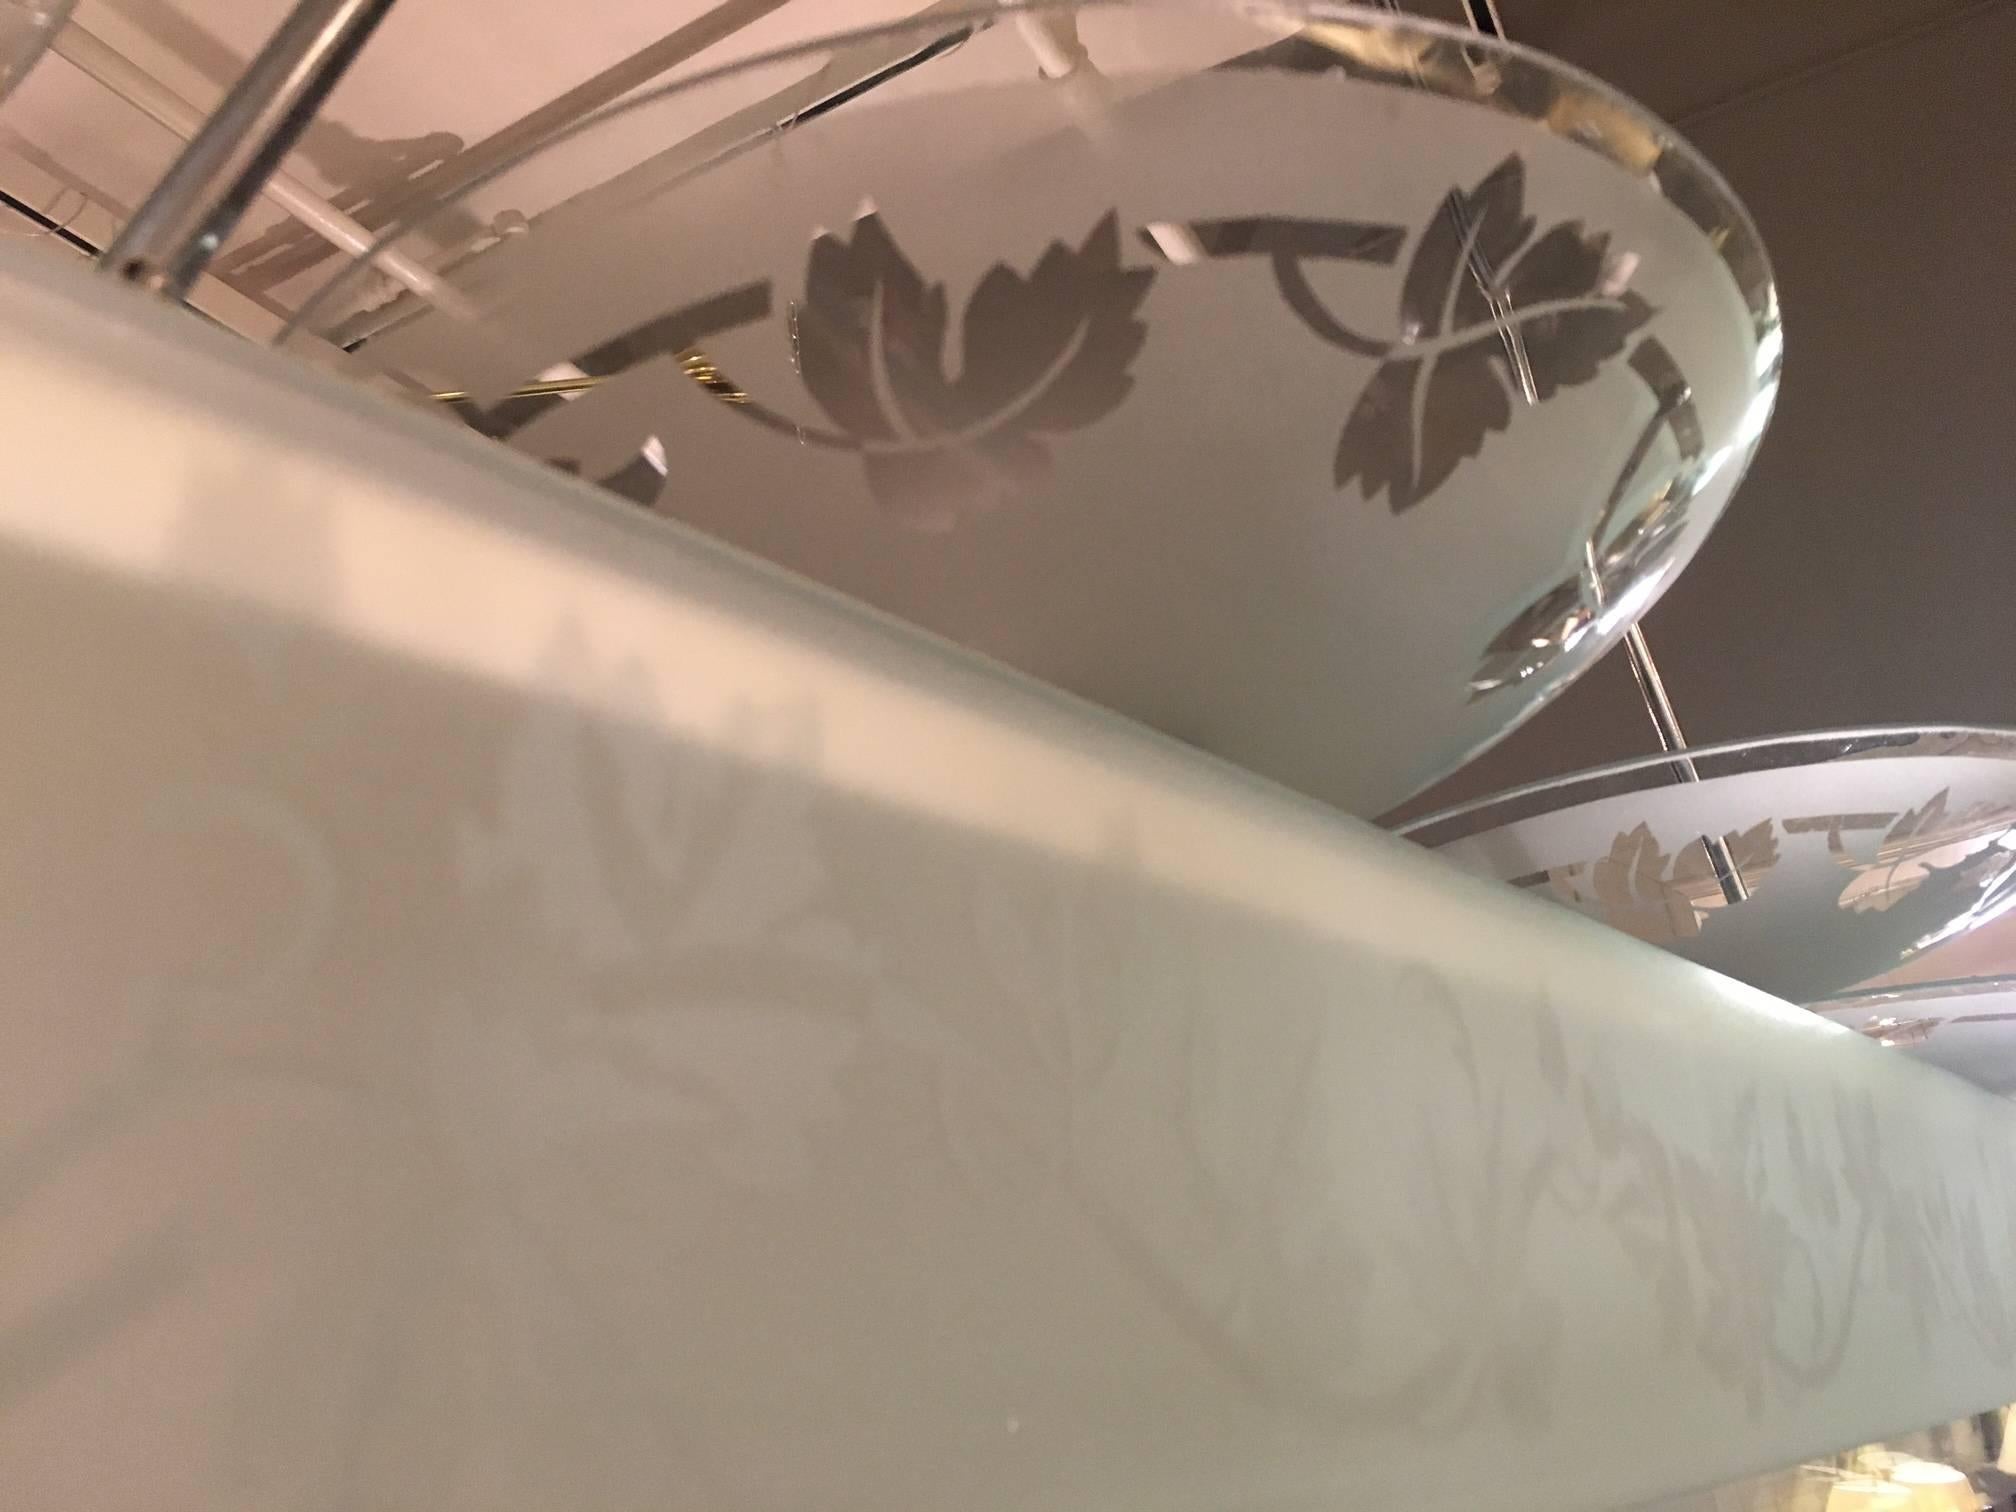 Vier Glasschalen, geätzt mit stilisierten Schwaden, montiert an einer langen, beleuchteten Chromstruktur mit ebenfalls geätzten Glaswänden, die vier Glaslamellen enthält und an zwei verchromten Stangen und einem Baldachin hängt.

UNSERE REFERENZ